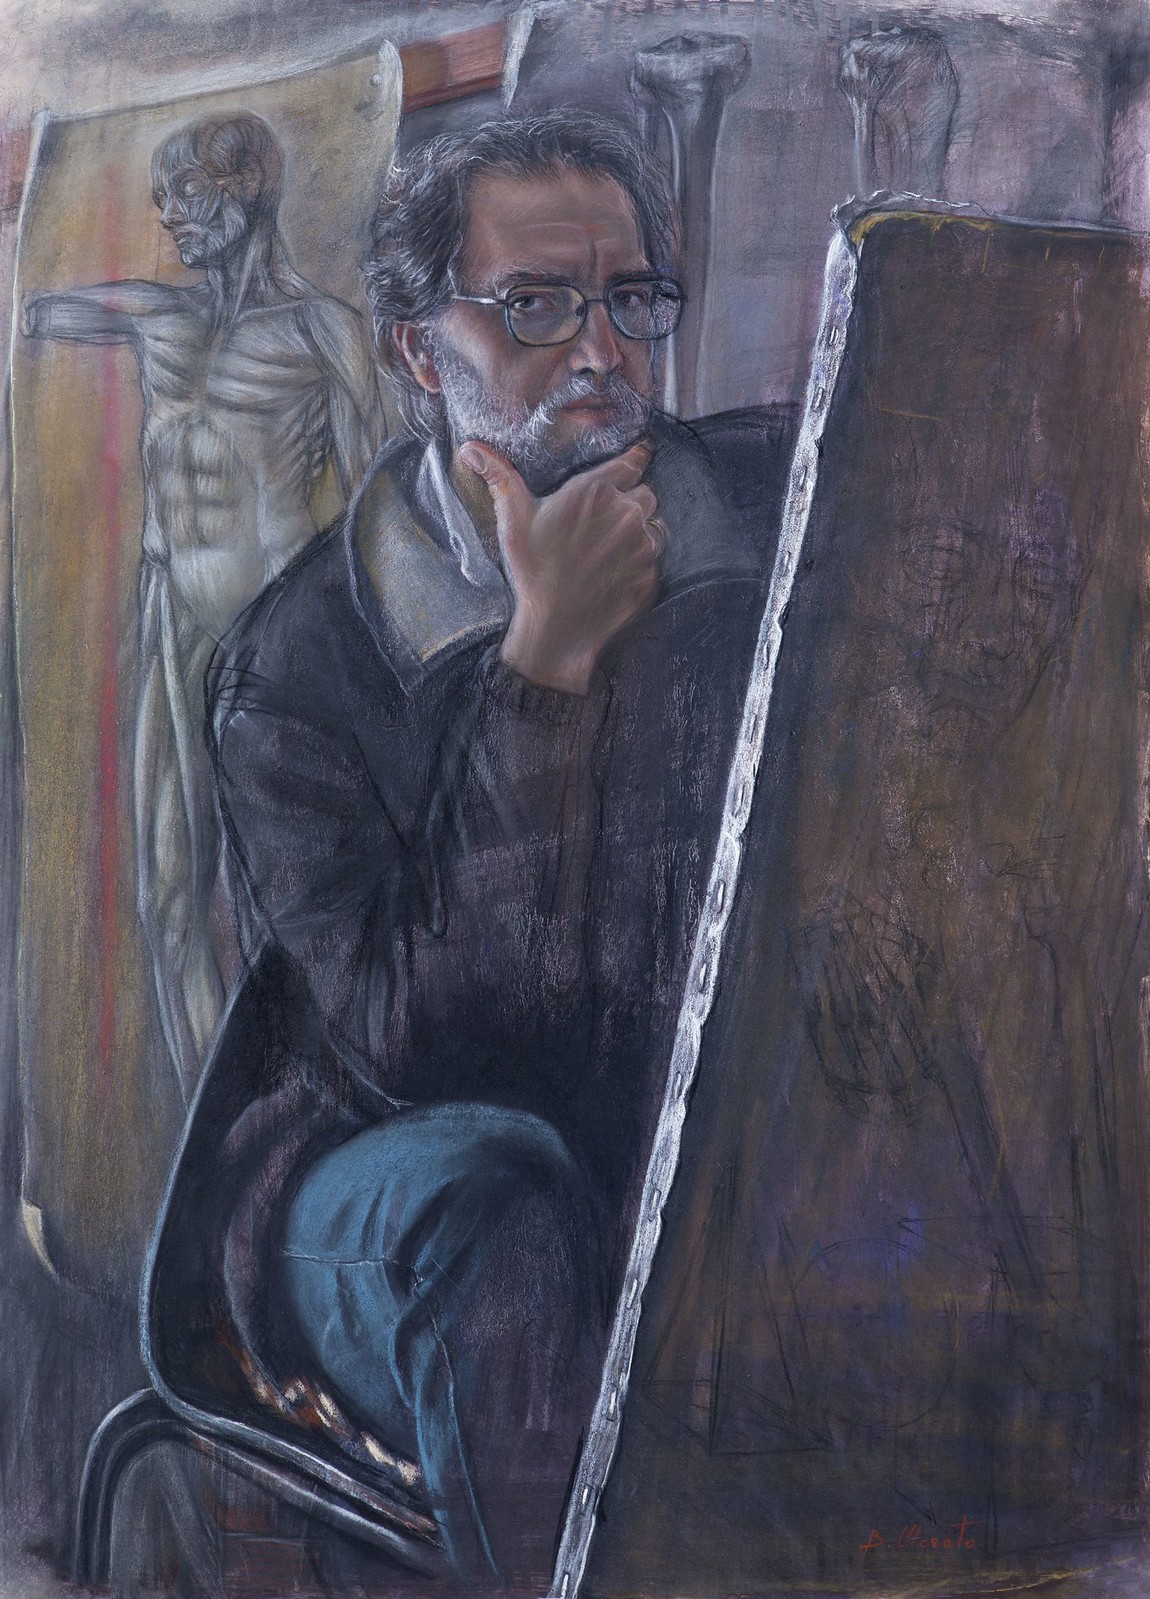 Bruno-Morato-Art- Attimi dello sguardo, pastello. 82x60 cm